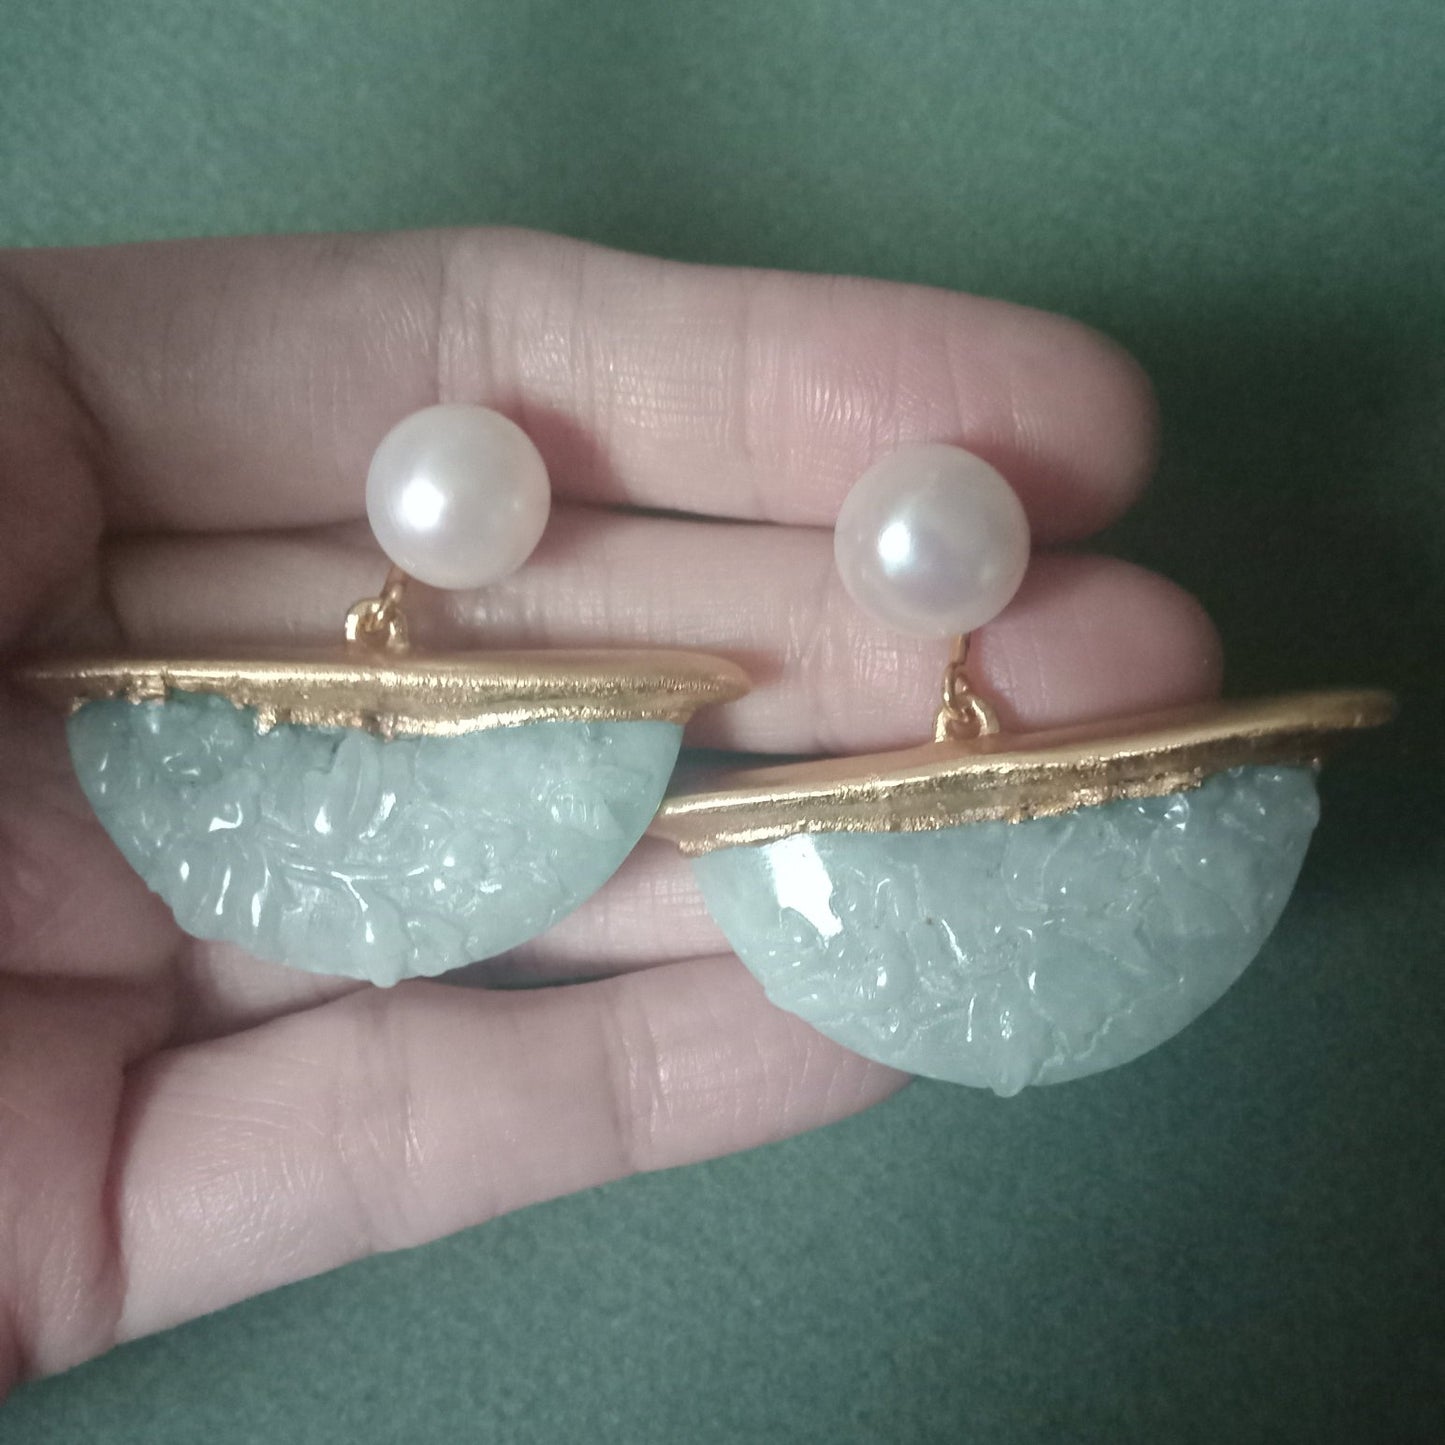 Half moon jade flower carving earrings with FW pearls